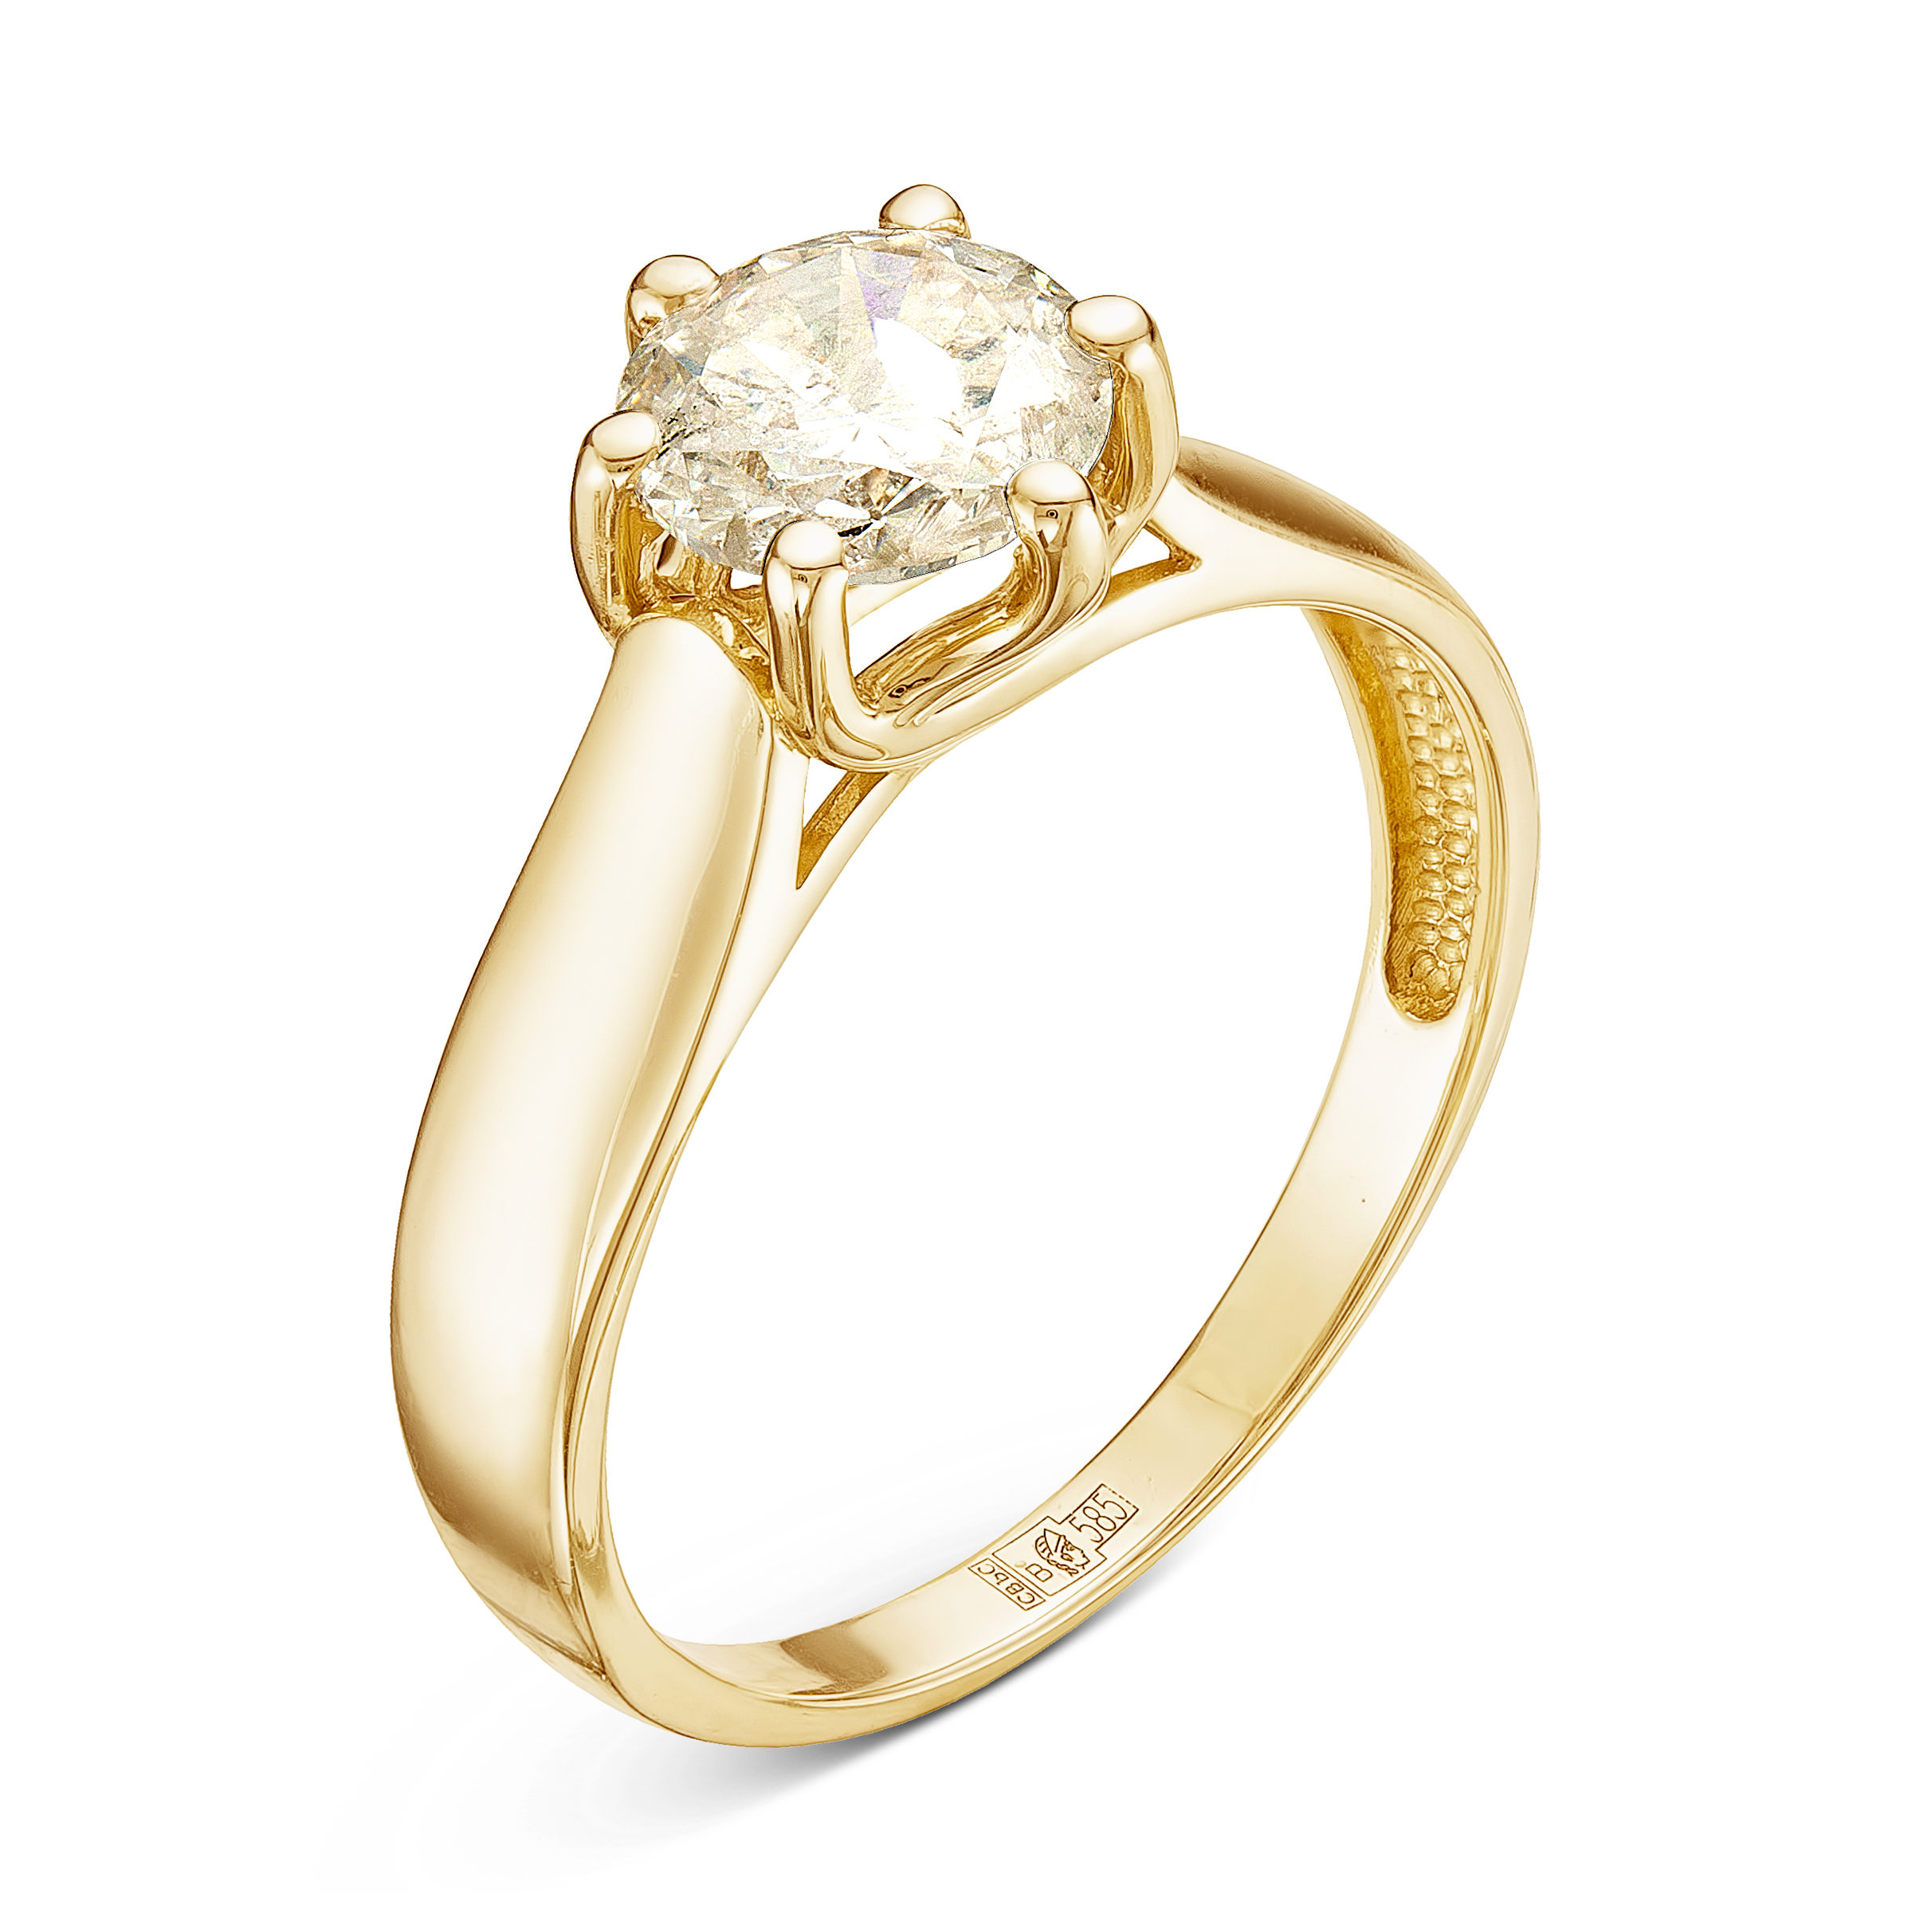 Ювелирные кольца из золота с бриллиантами